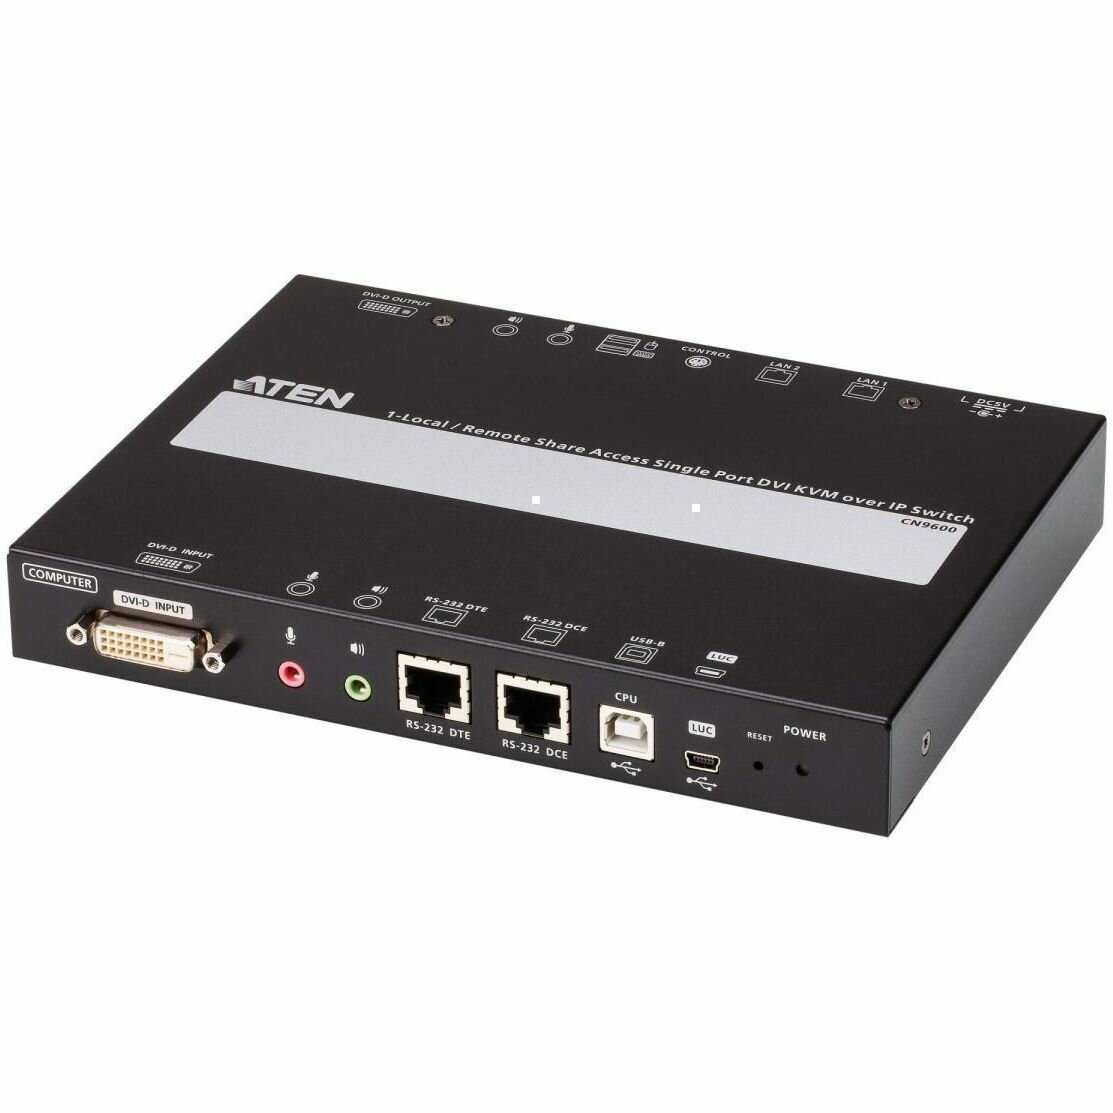 Устройство Aten Удлинитель KVM+DVI управление по IP Rackmount/Desktop 10/100 Base-T с KVM-шнурами PS2 1х1.2м.;USB 1x1.2м. TCP/IP (Virtual